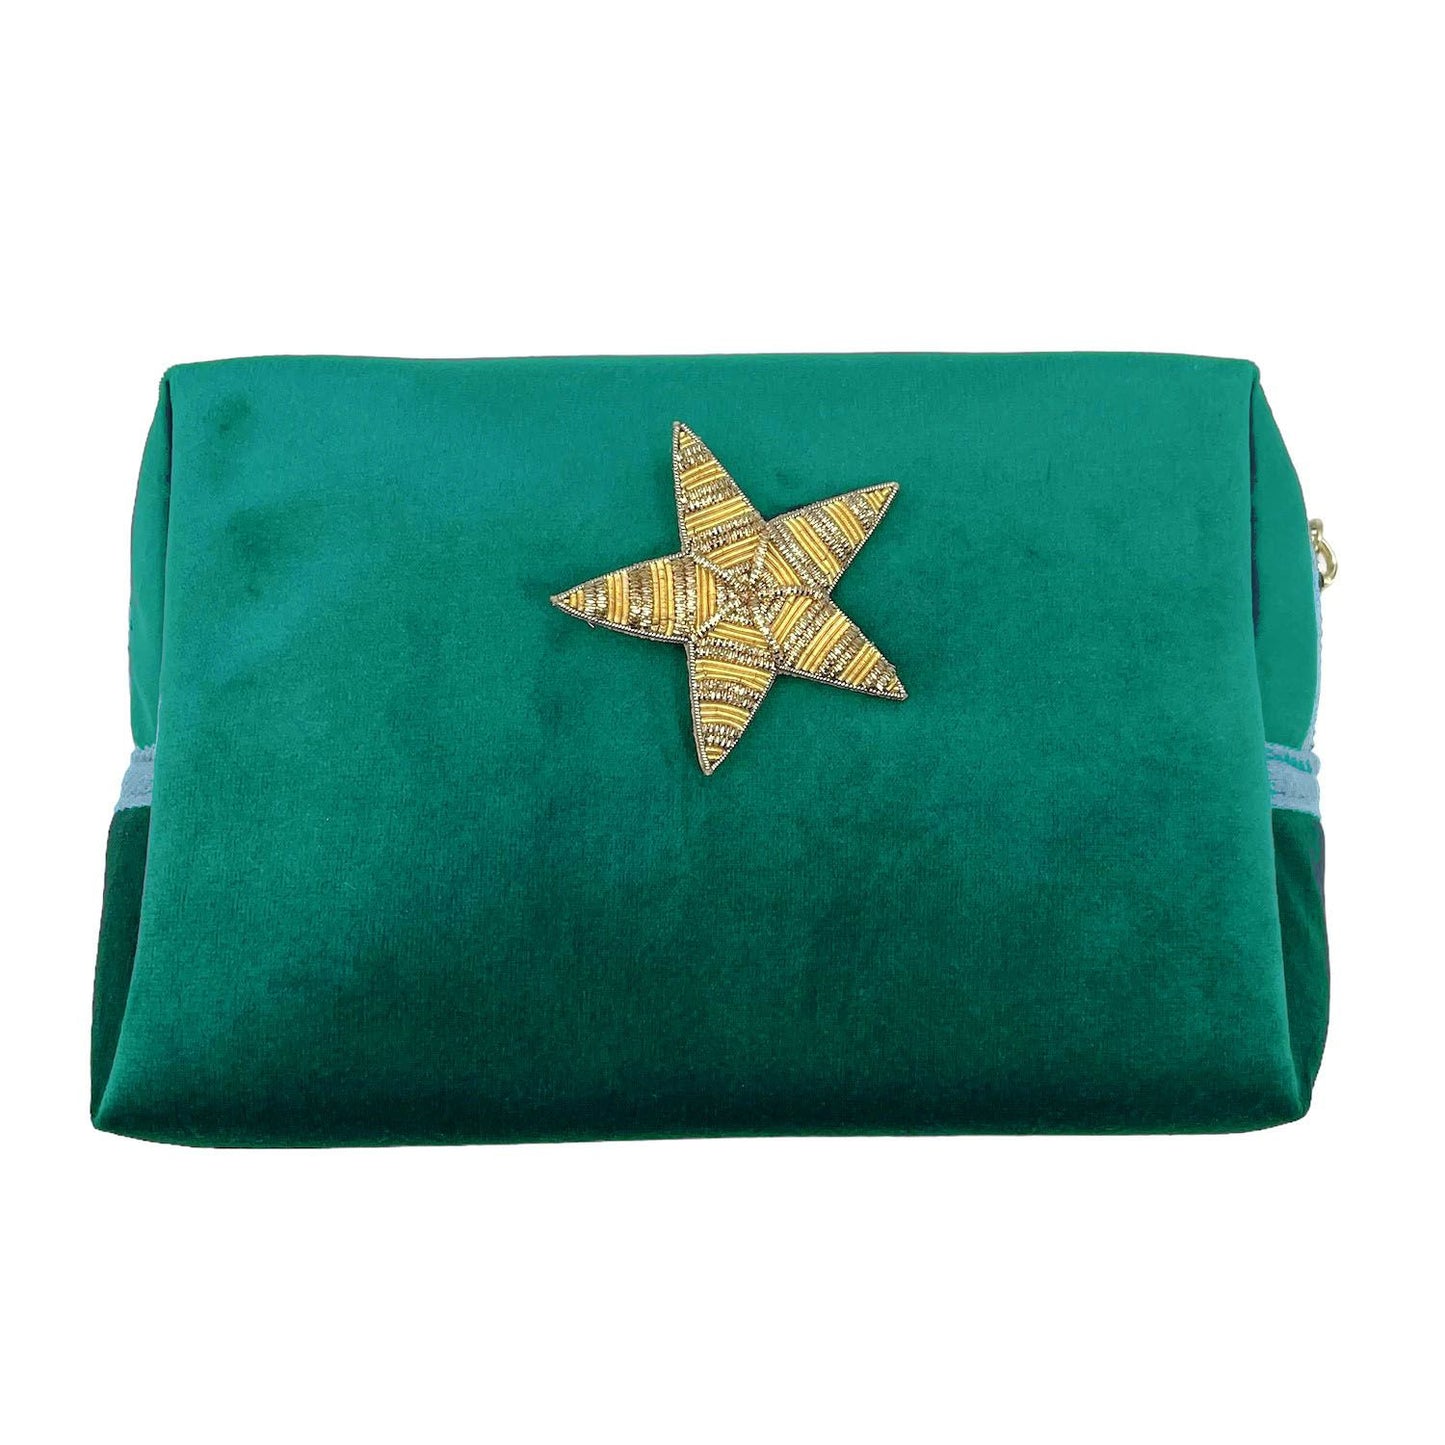 Green make-up bag & gold star pin - recycled velvet